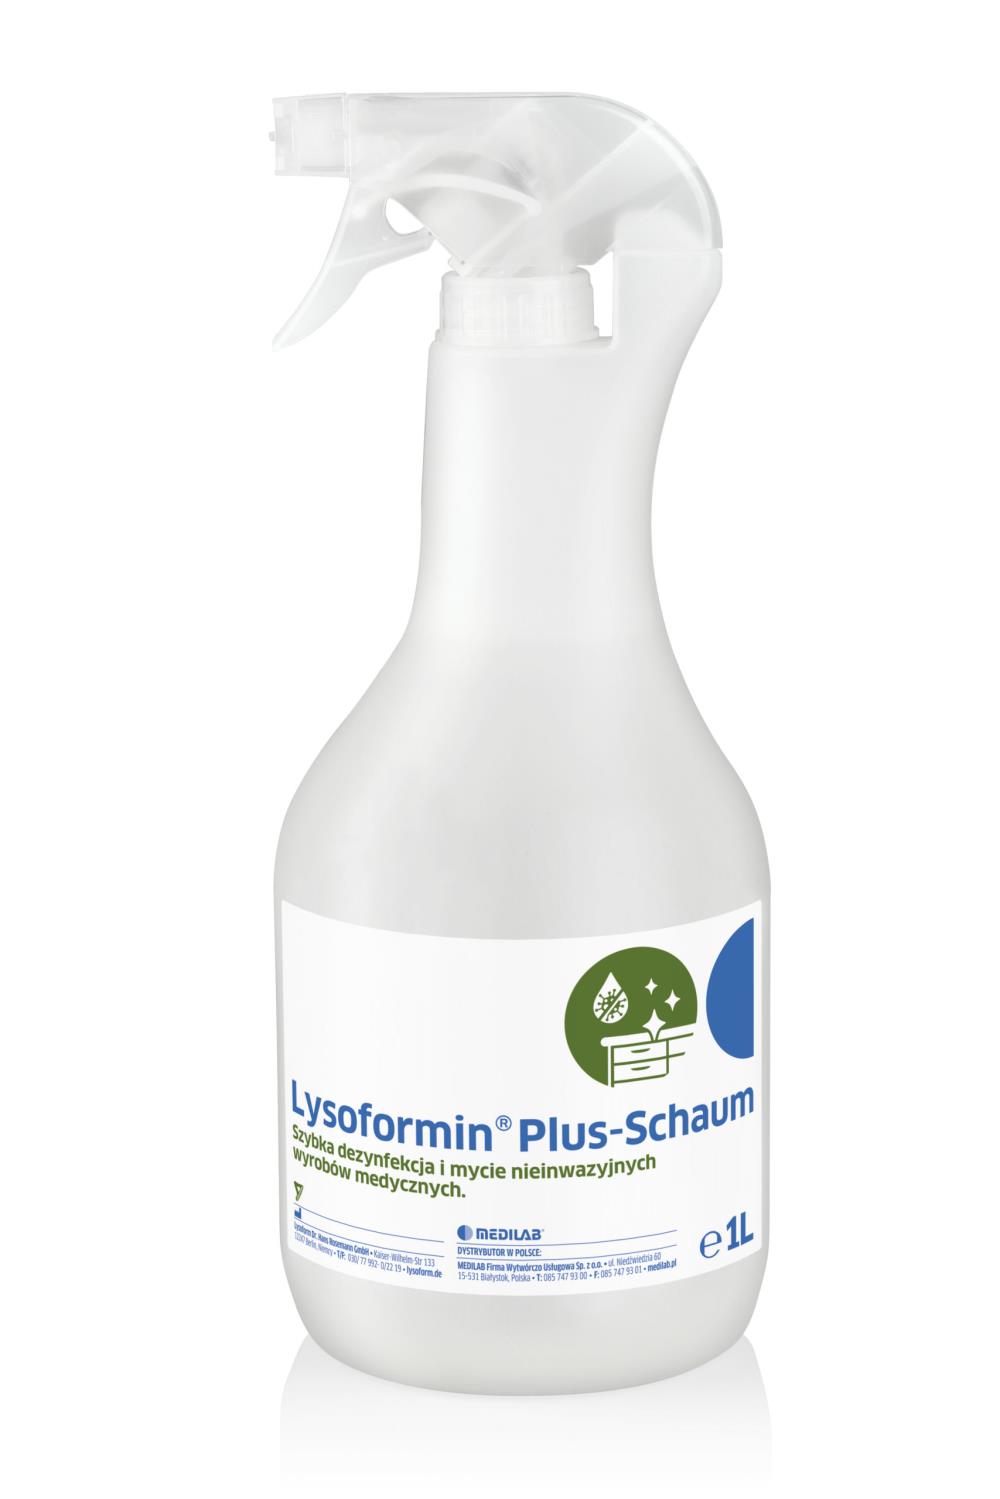 Lysoformin Plus-Schaum 5l bezalkoholowy preparat do dezynfekcji